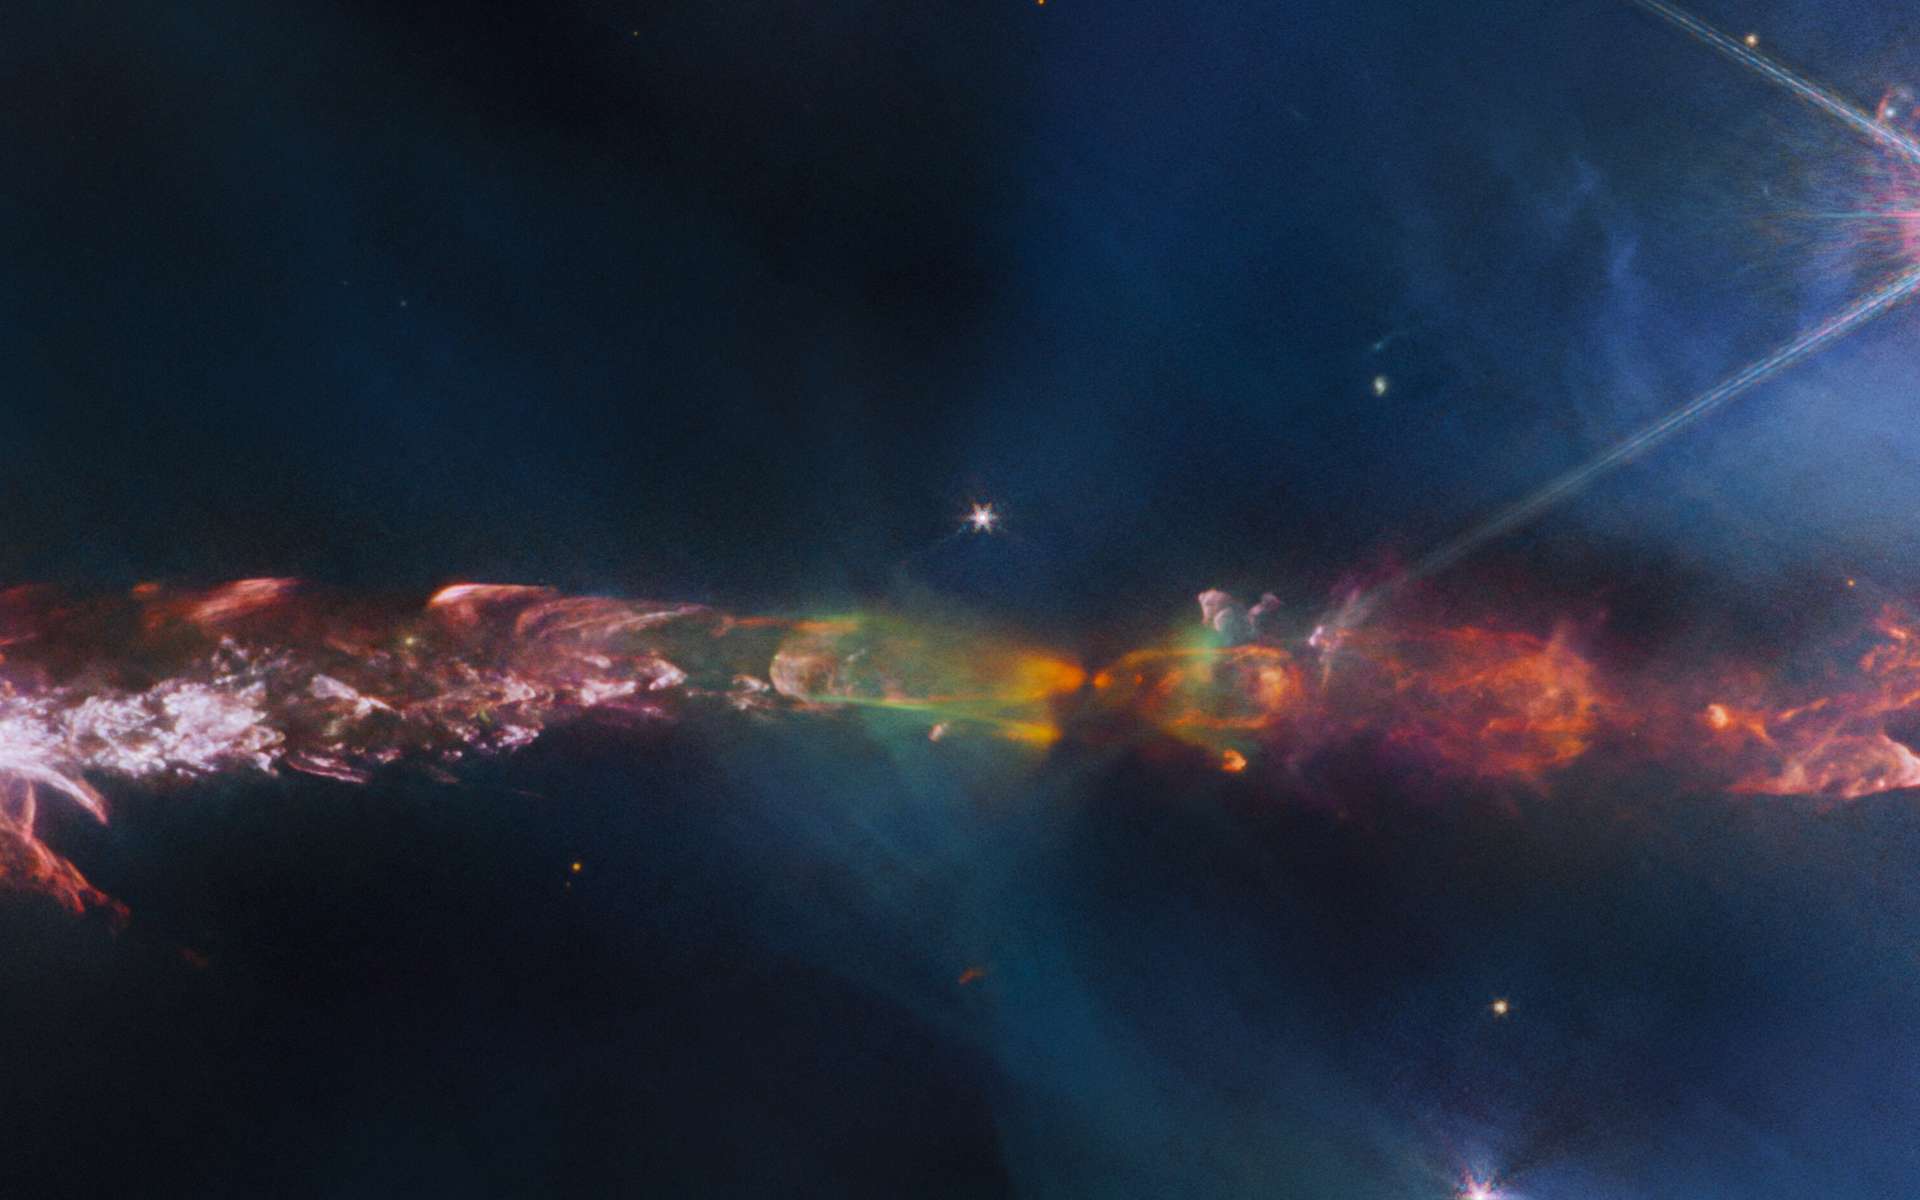 Le télescope James-Webb révèle des détails magnifiques d'une étoile en train de naître